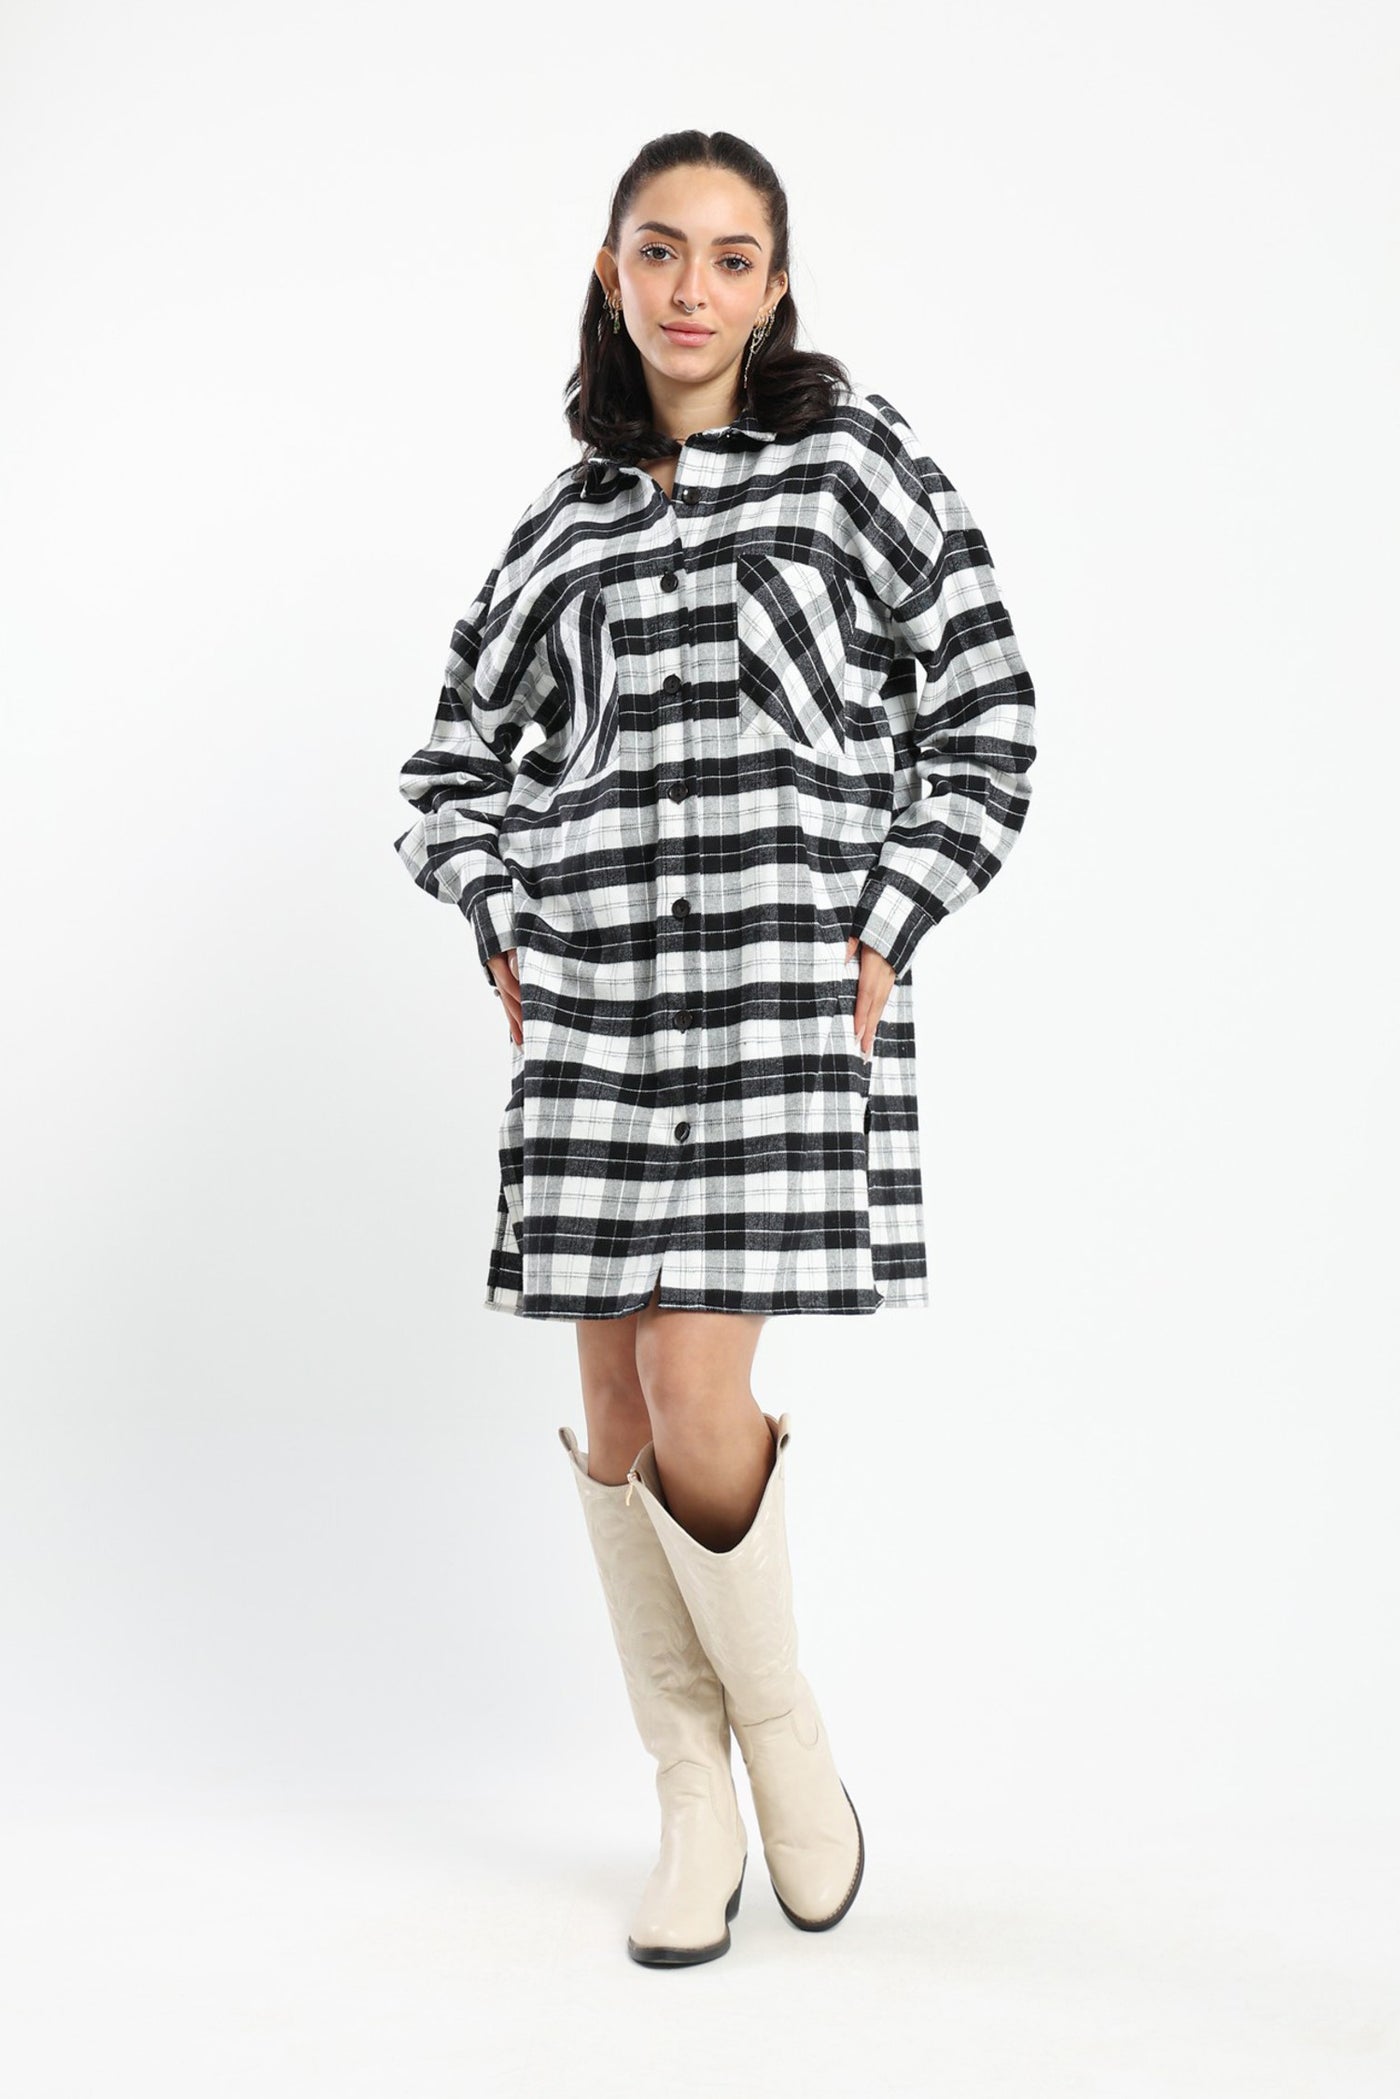 Overshirt Dress - Checkered